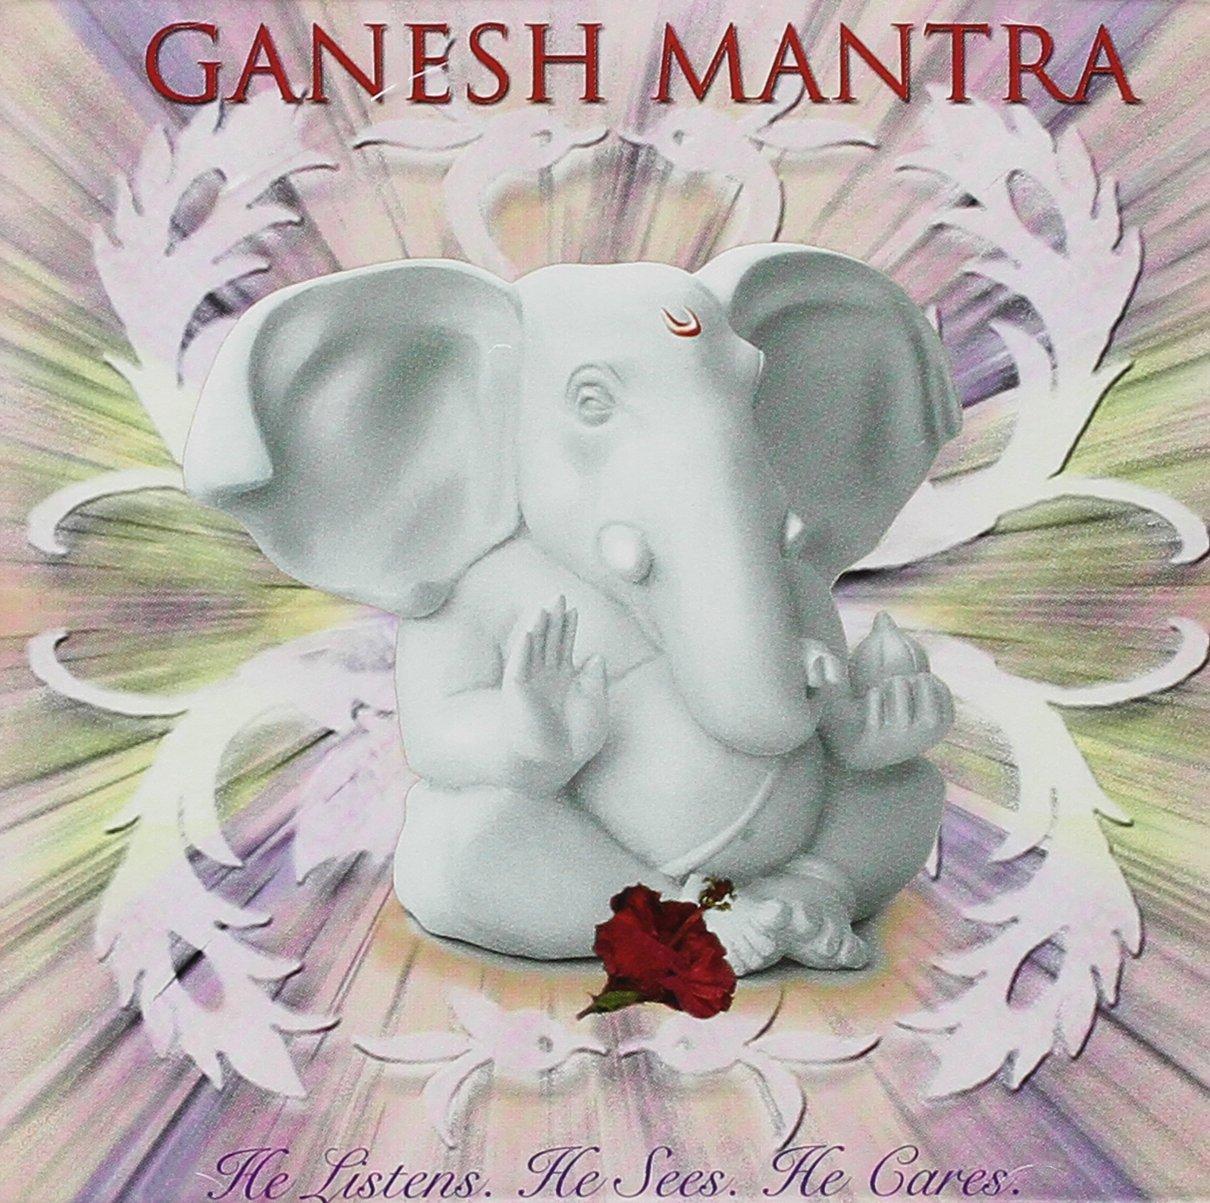 Pandit, Kedar & Abhyankar, Sanjeev - Ganesh Mantra